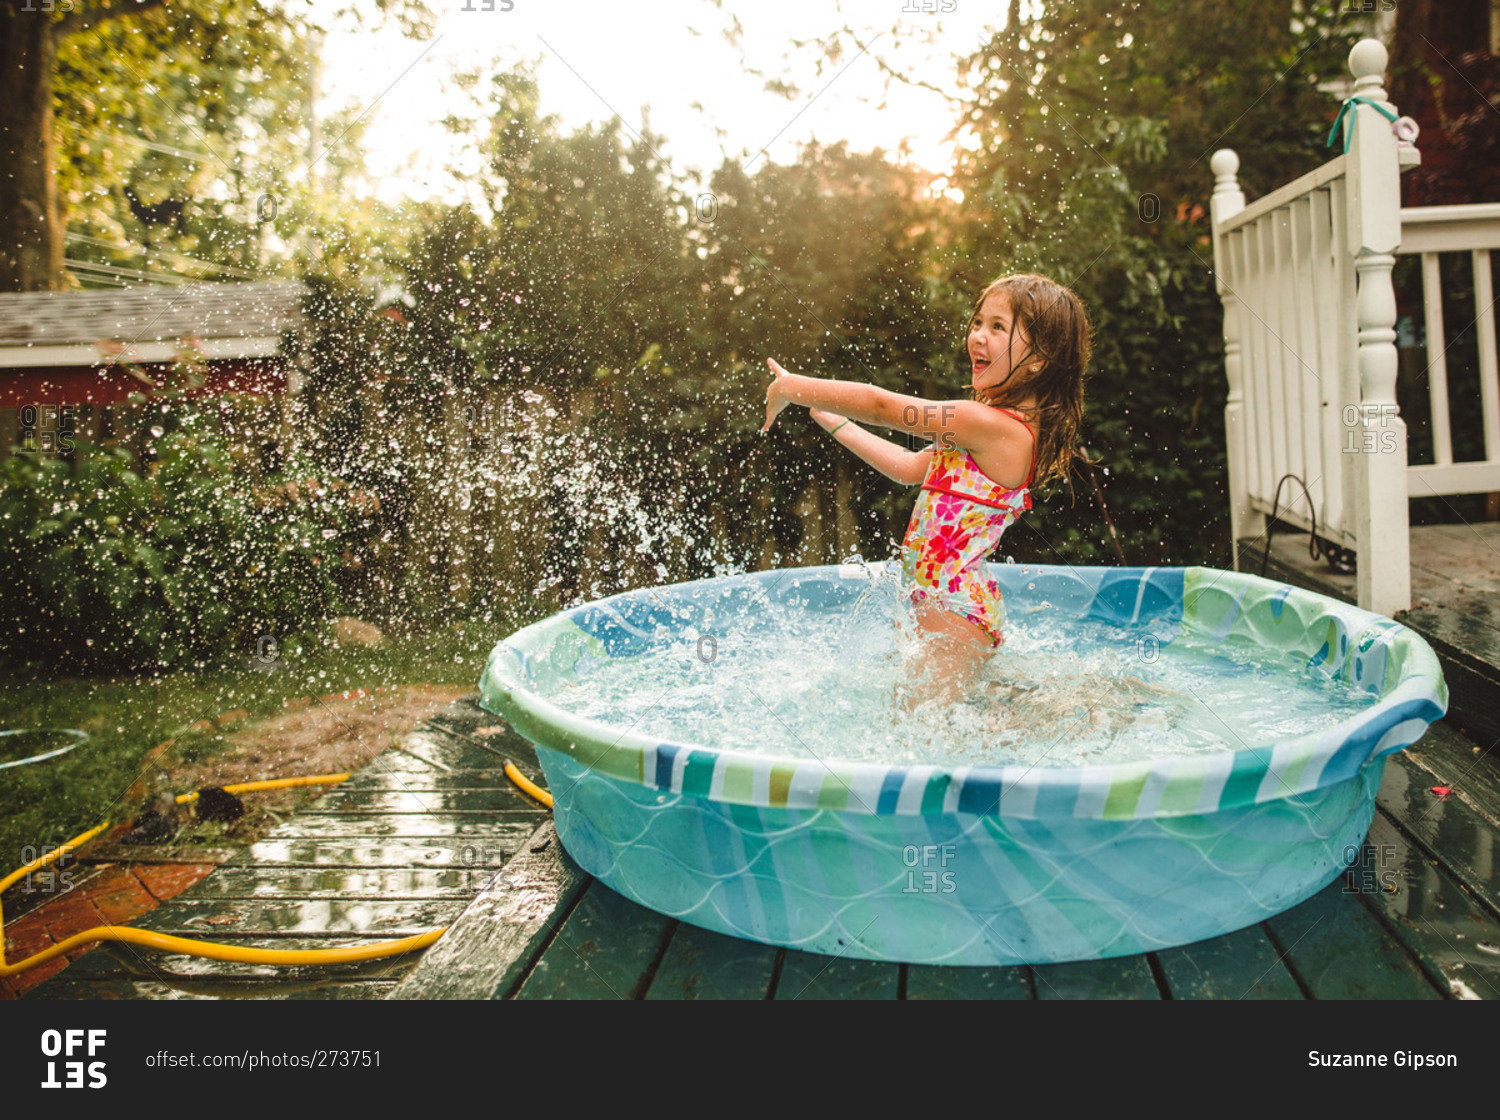 Girl splashing water in a kiddie pool